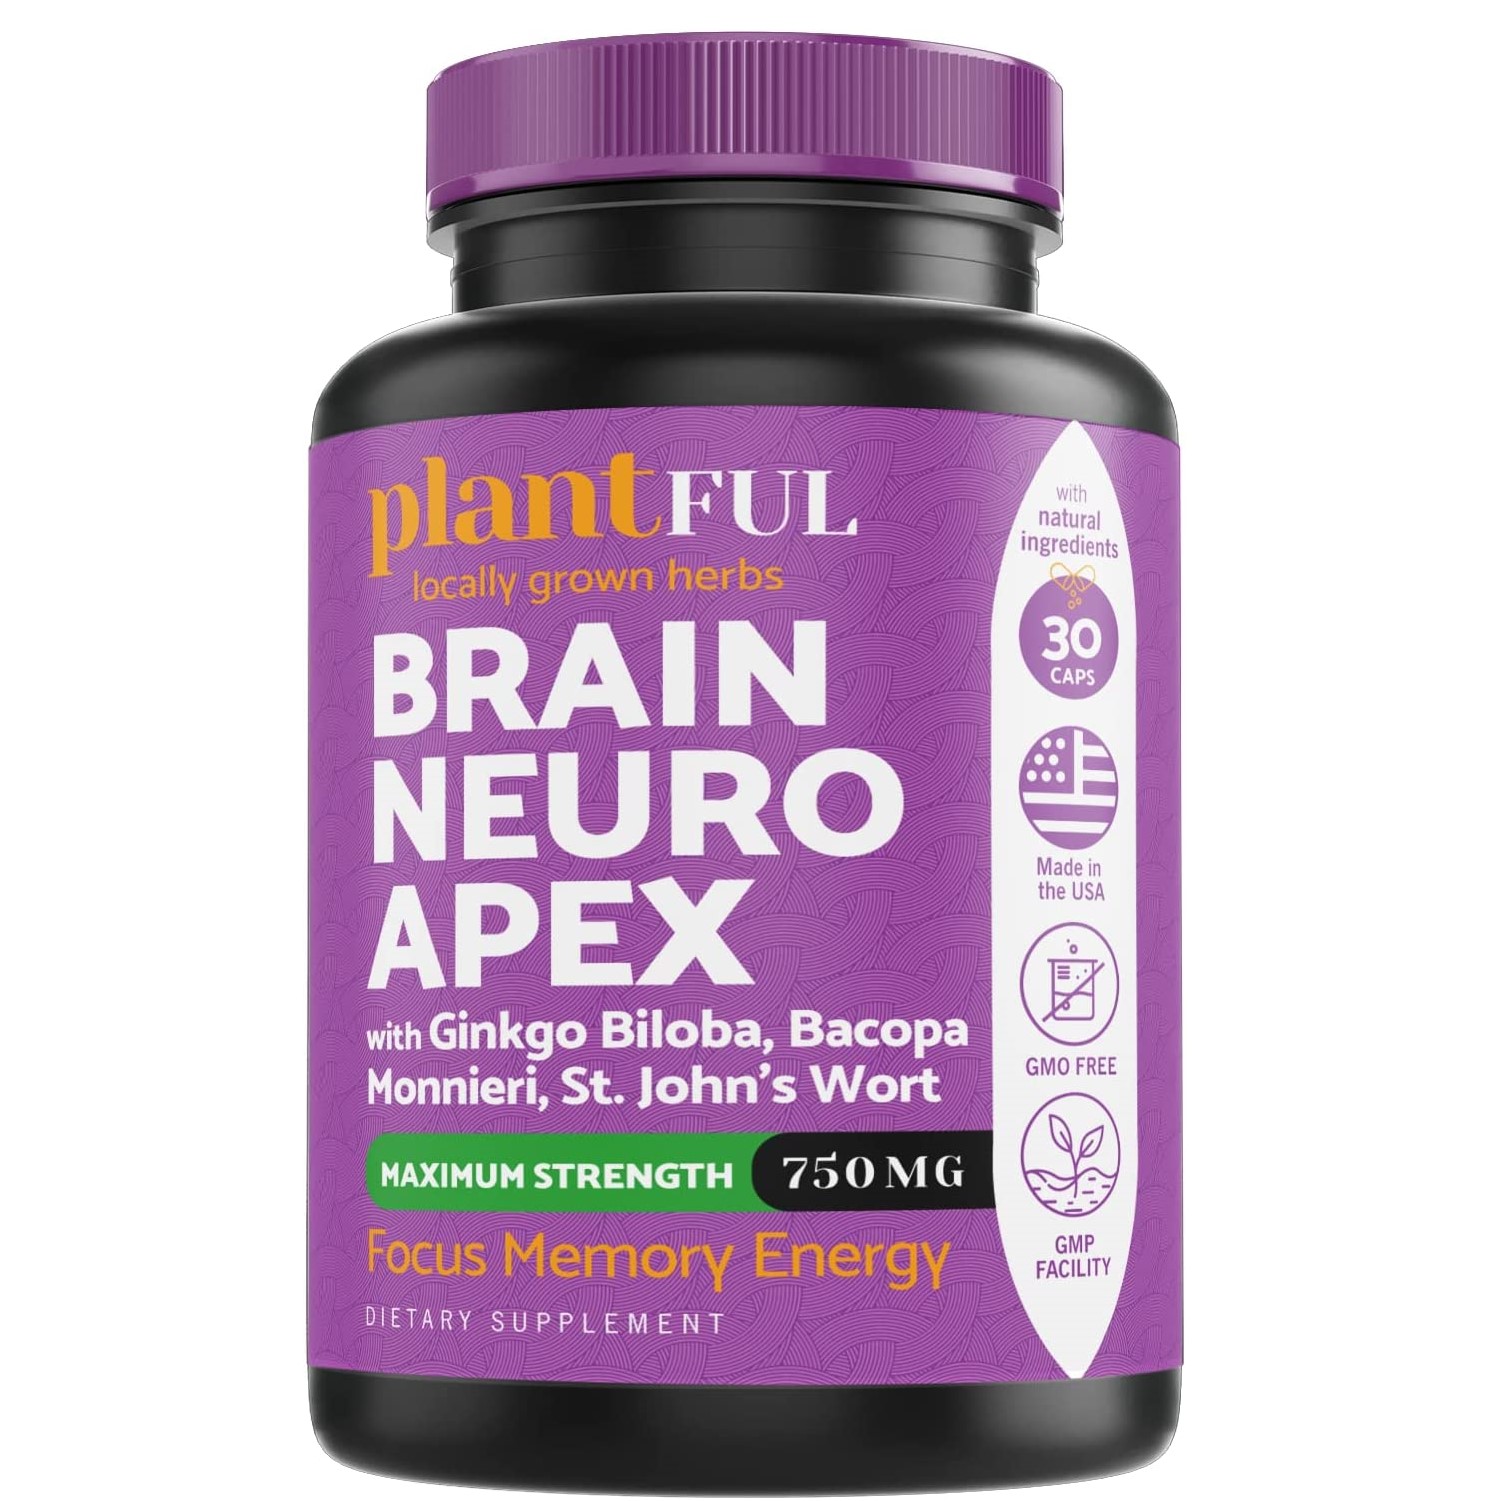 Plantful Brain Neuro Apex Supplements